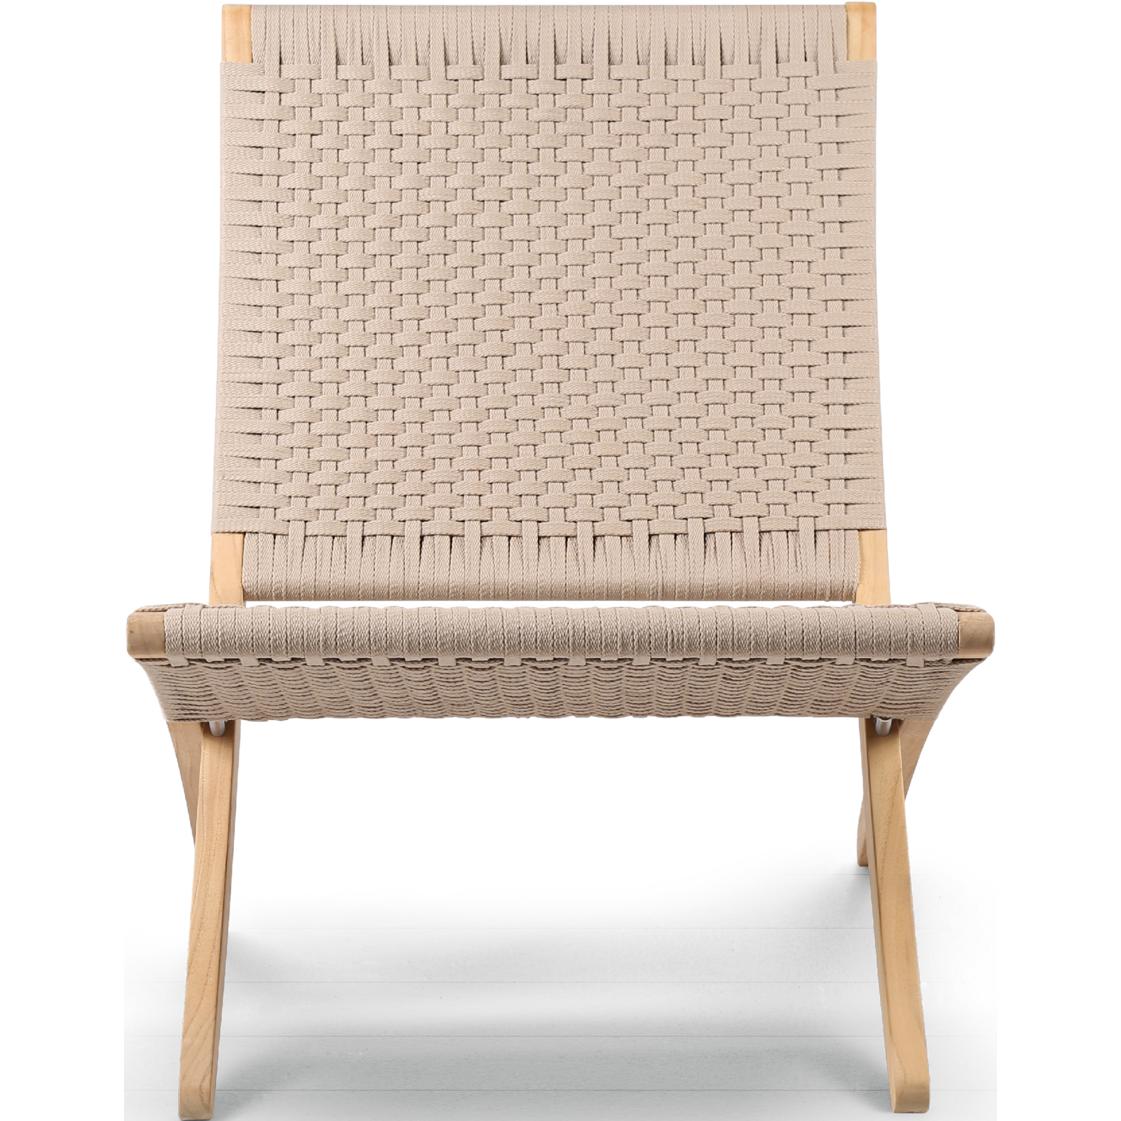 Carl Hansen MG501 Cuba Chair utendørs ubehandlet teak, tau/sesam